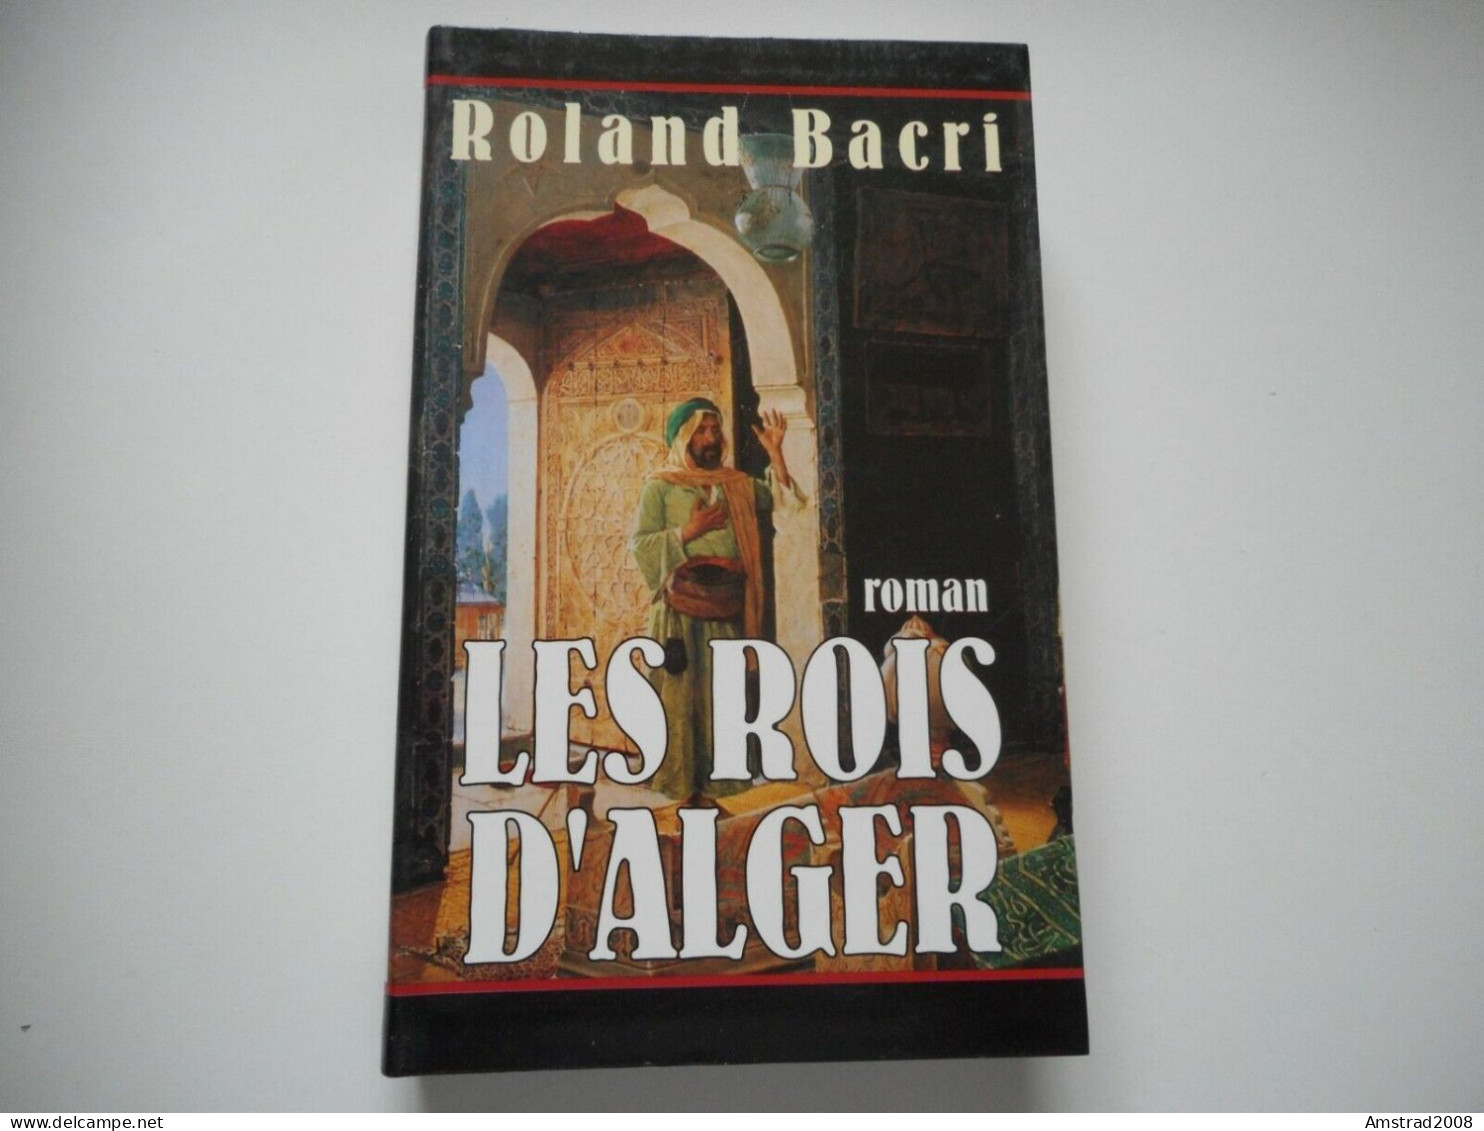 LES ROIS D'ALGER / ROLAND BACRI - ROMAN (Cercle Maxi-livres) - ALGER LA REGENCE - ALGERIE - ALGERIA - Geschiedenis,